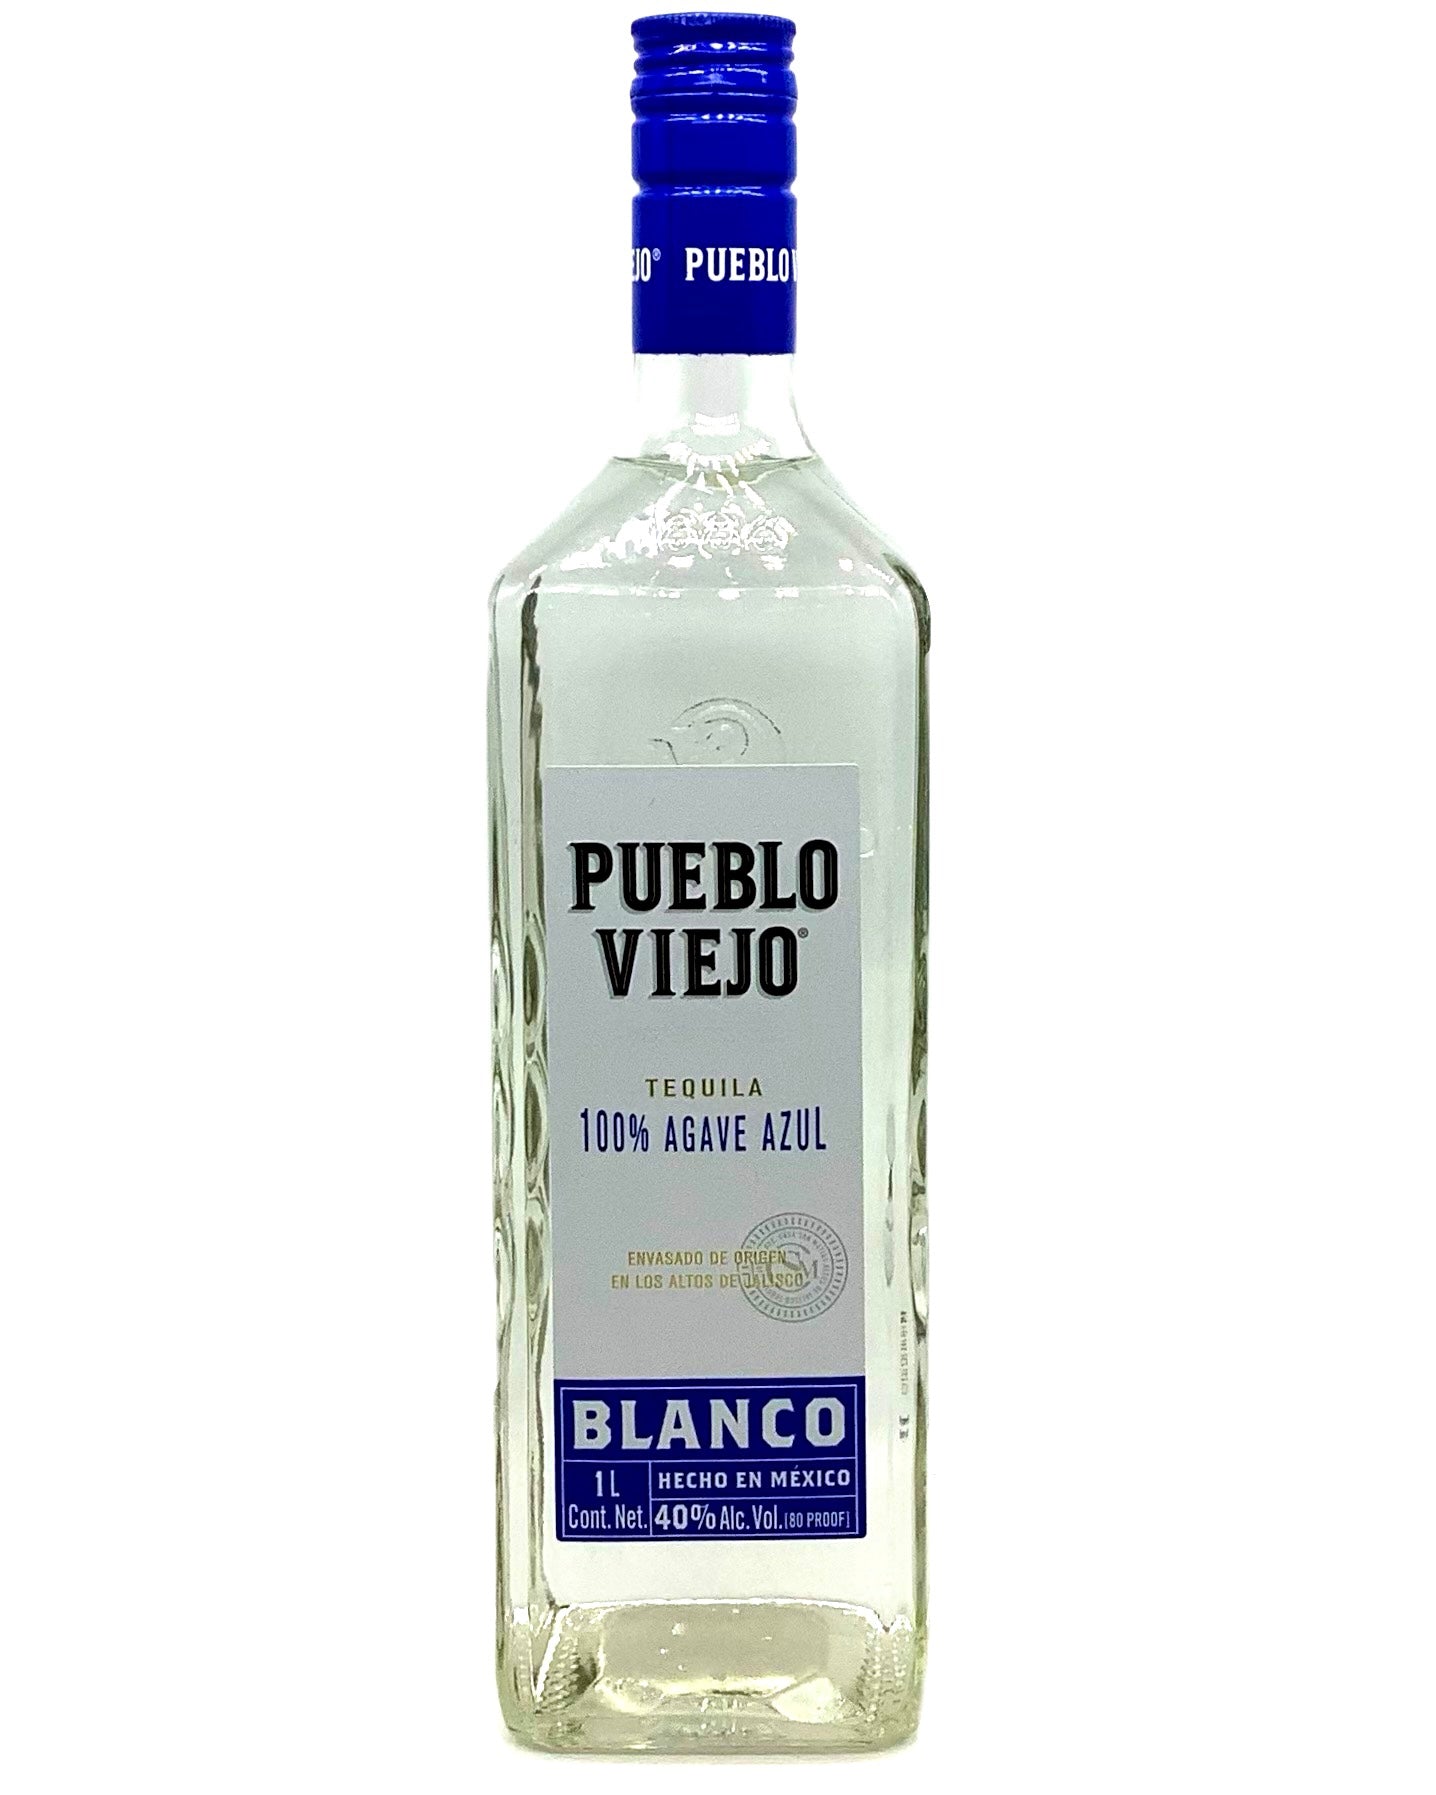 Pueblo Viejo, Tequila Blanco de Agave Azul 1L newarrival